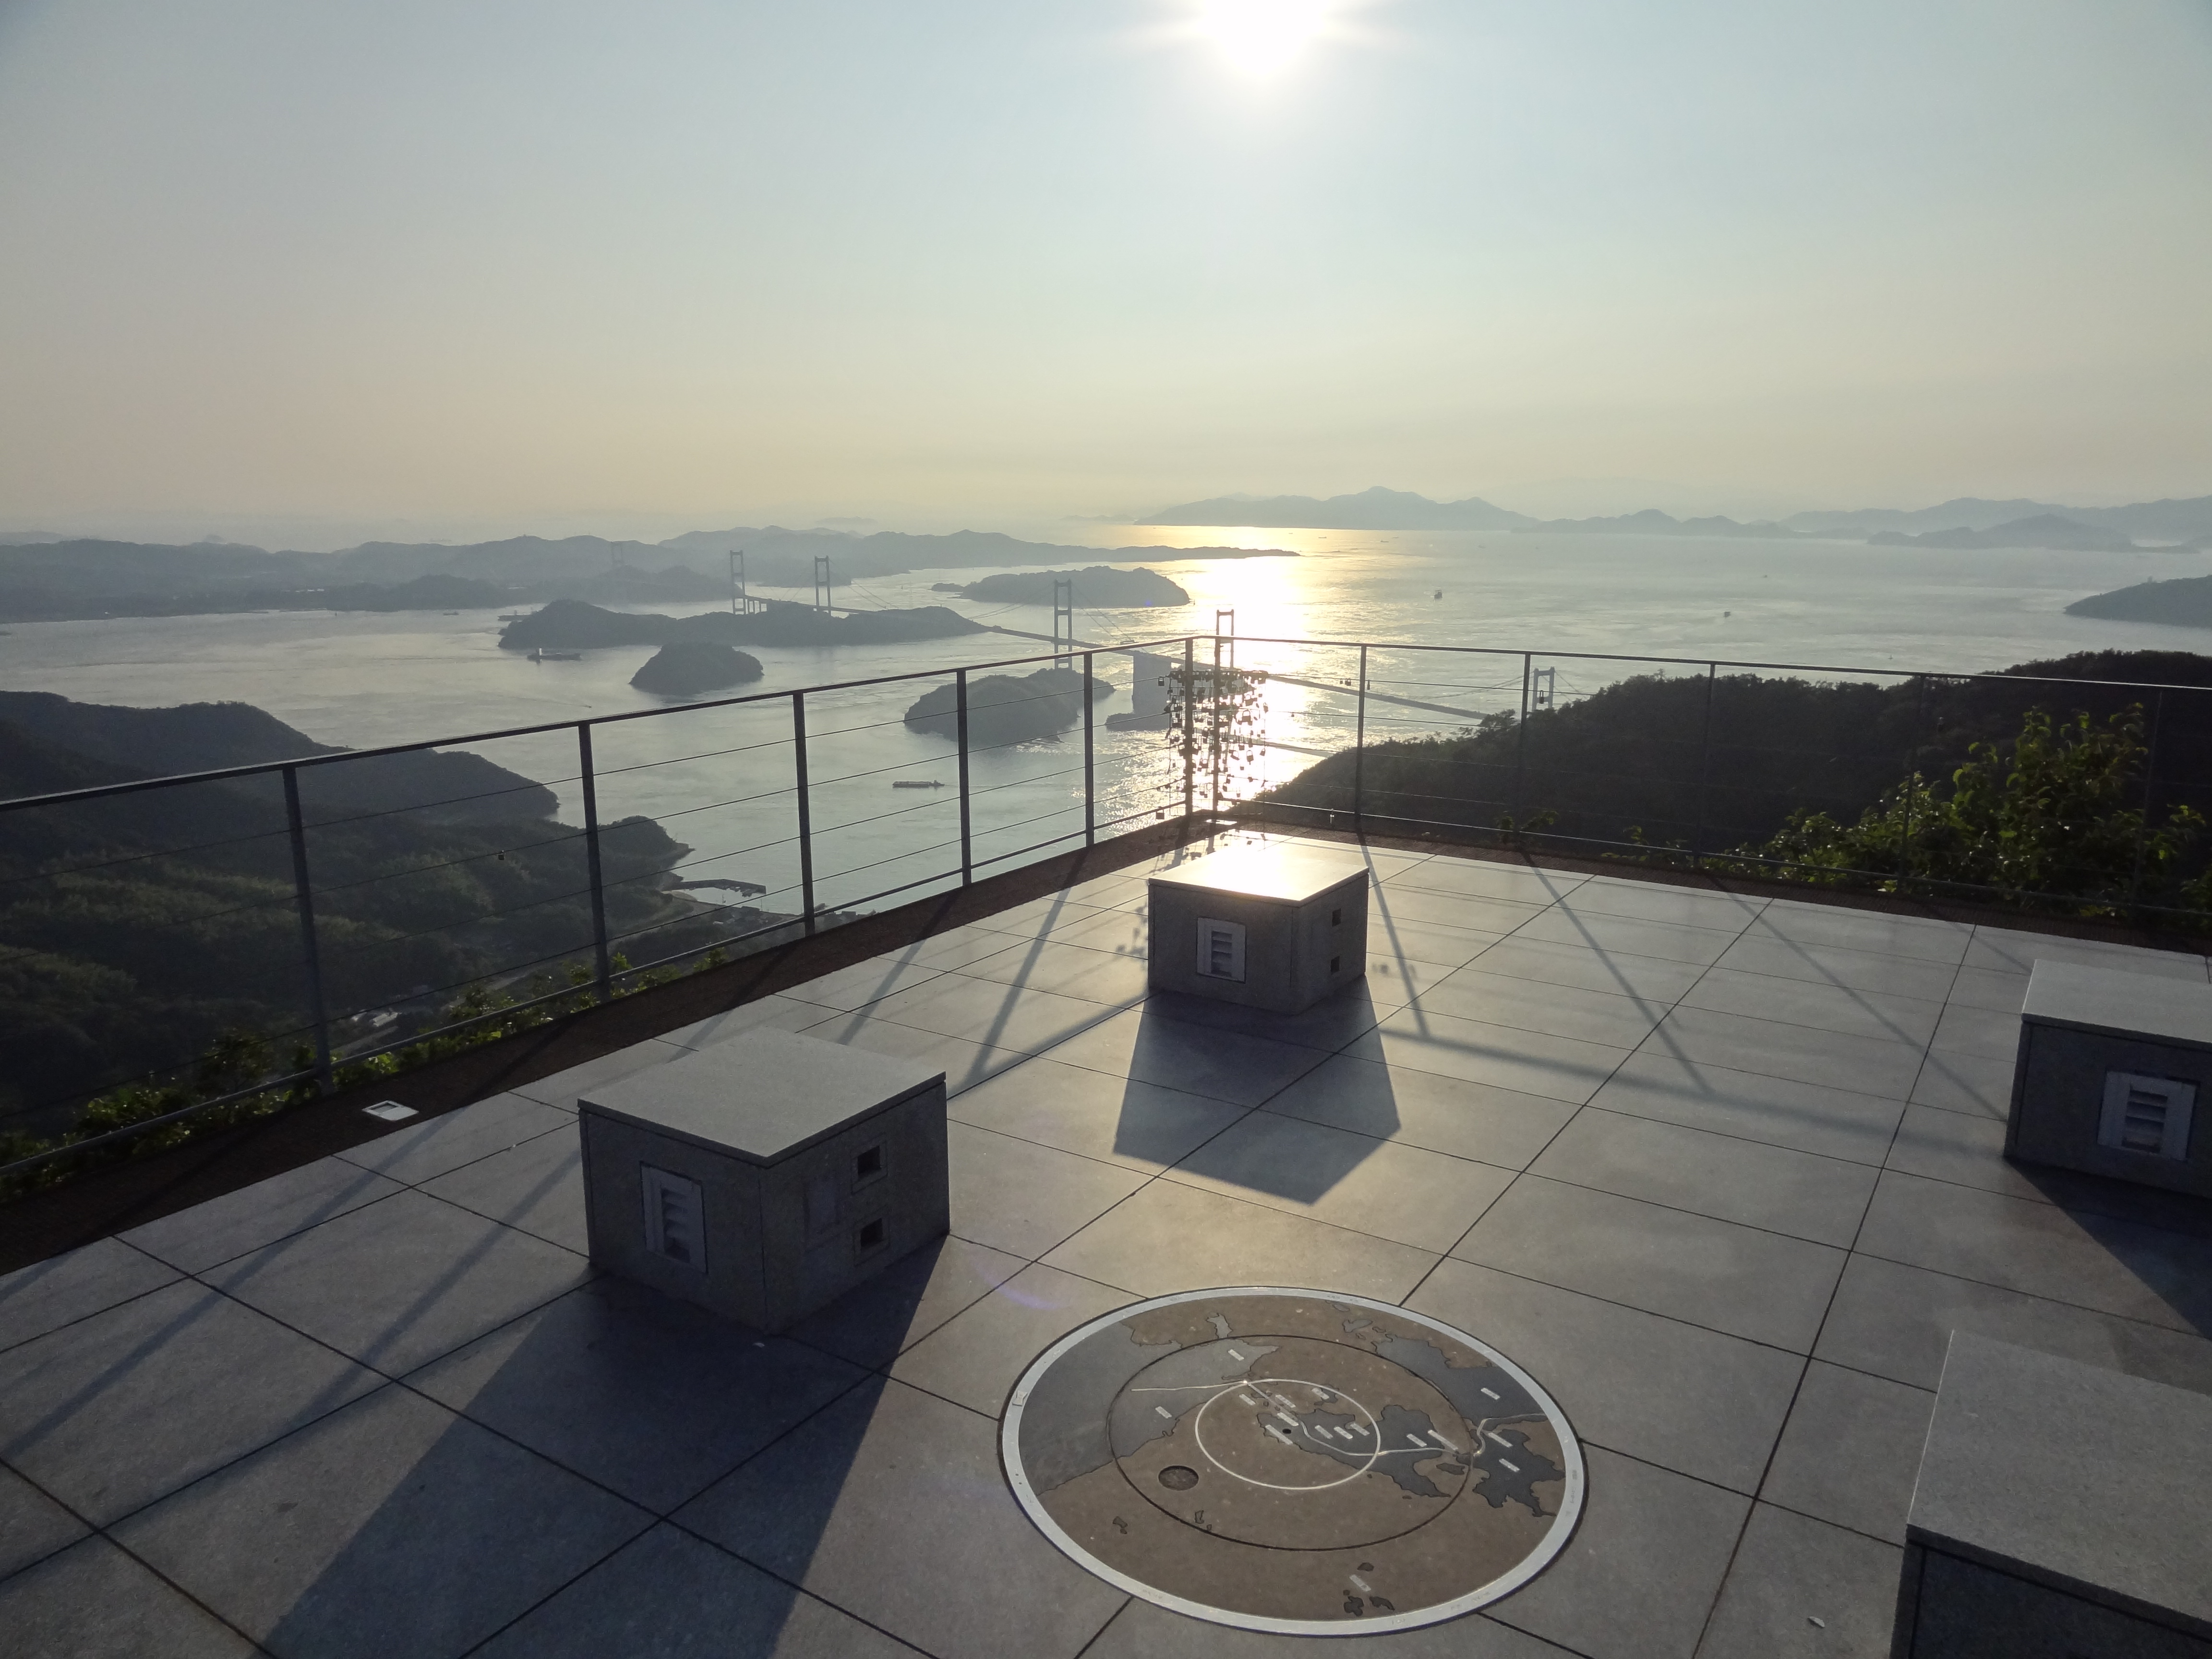 Menikmati pesona pulau biru dari dek observasi terbaik - Taman Observasi Kirosan